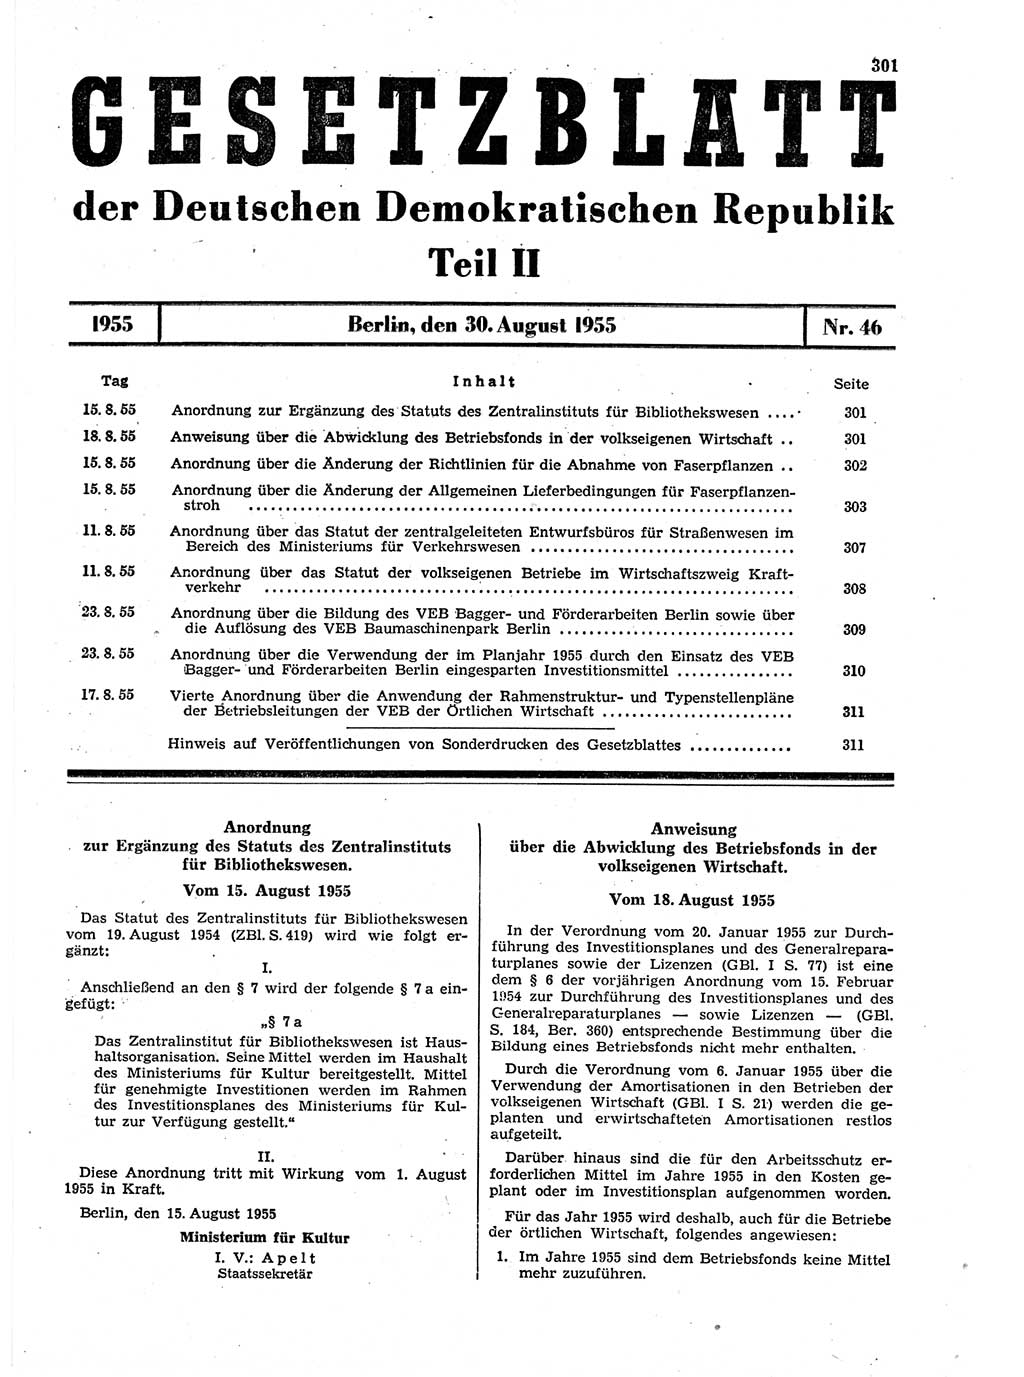 Gesetzblatt (GBl.) der Deutschen Demokratischen Republik (DDR) Teil ⅠⅠ 1955, Seite 301 (GBl. DDR ⅠⅠ 1955, S. 301)